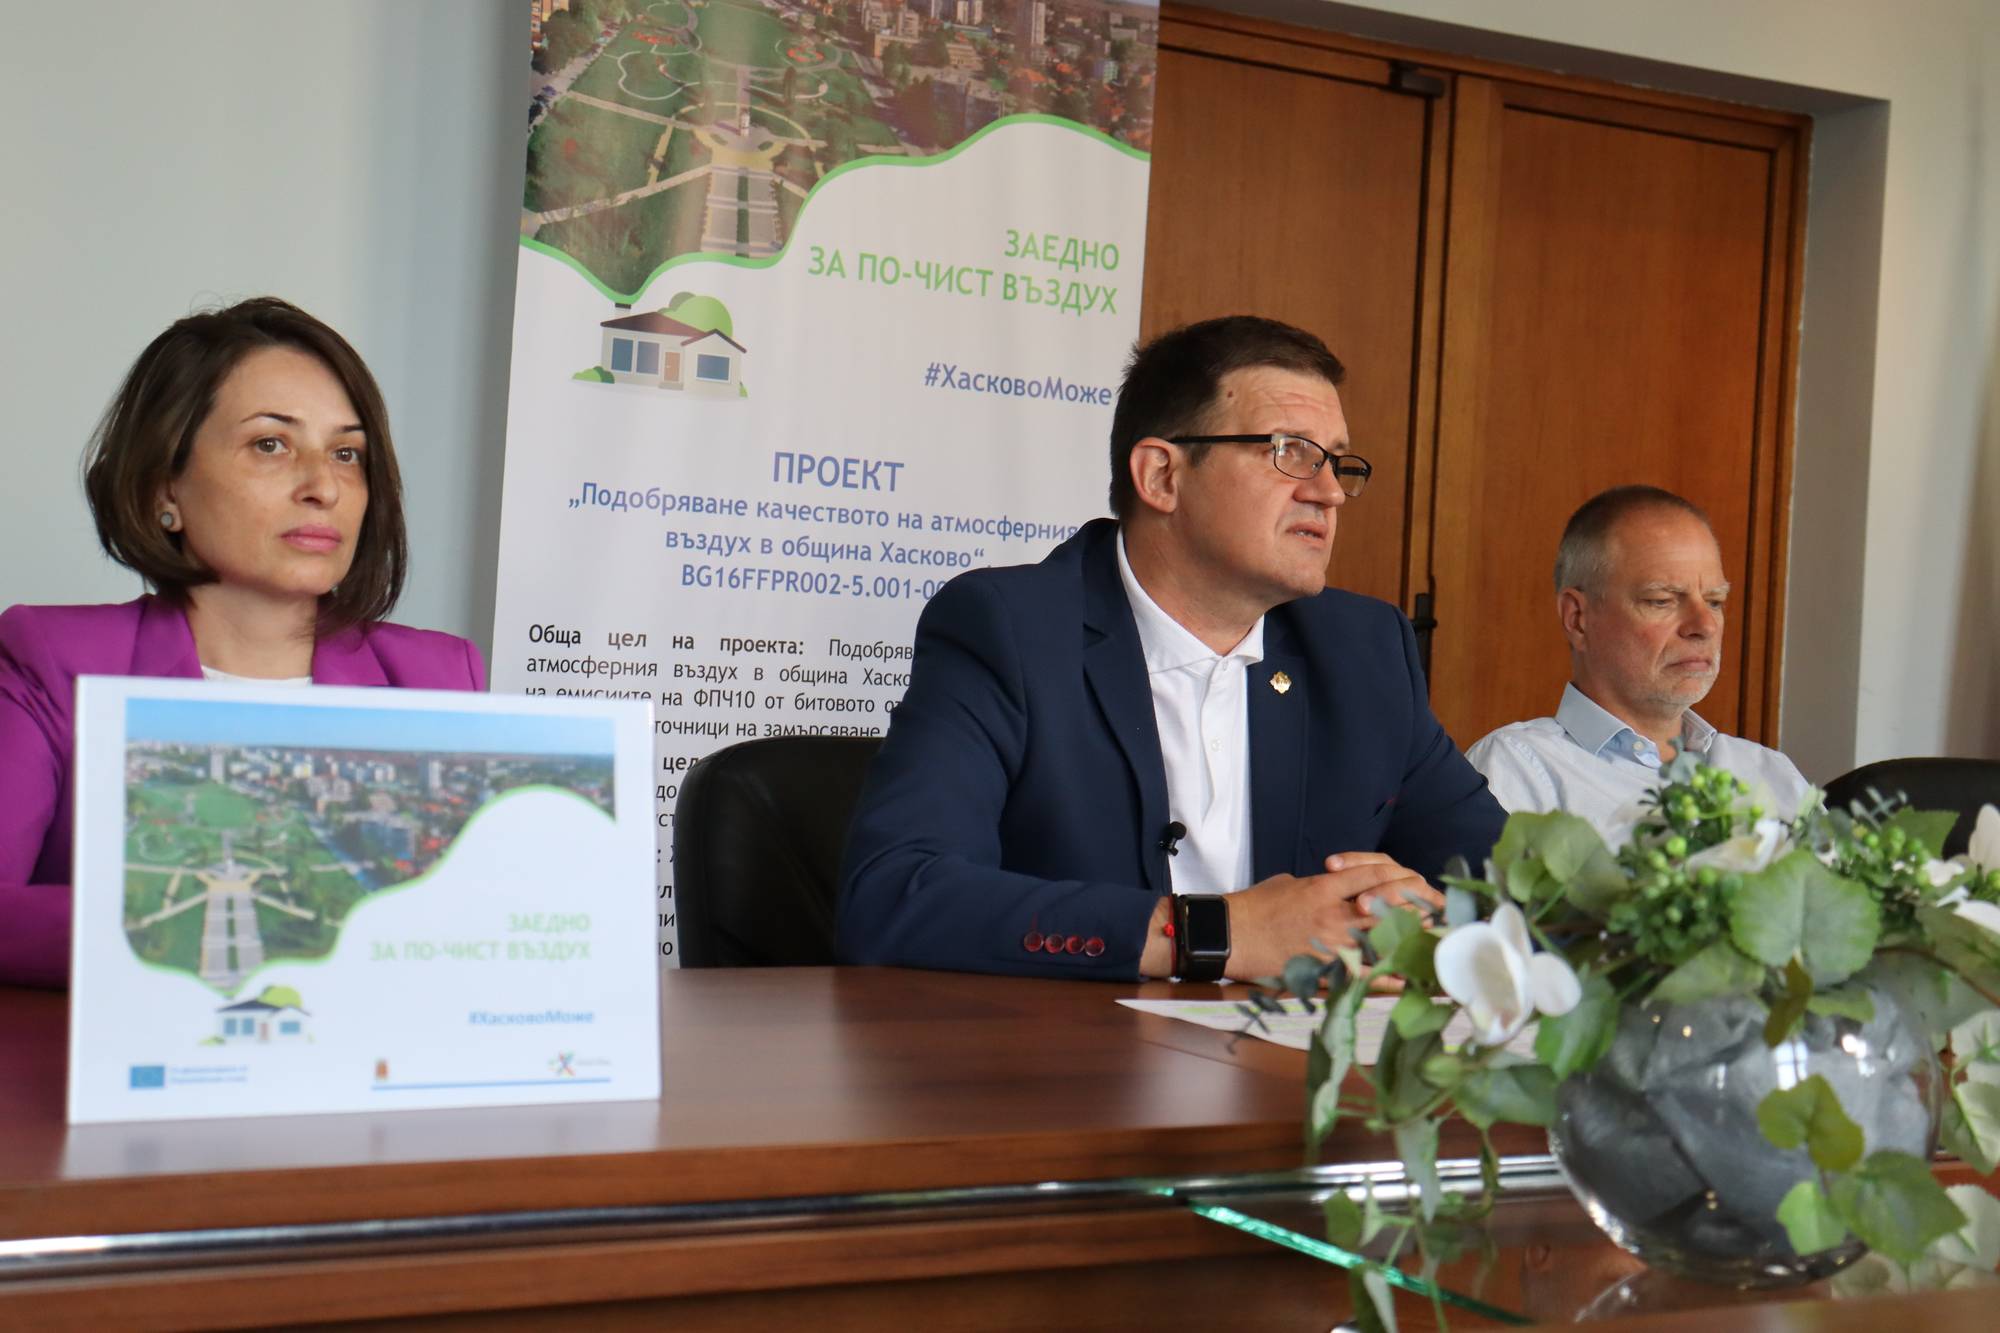  Община Хасково започва план за замяна на остарели печки с екологични уреди за отопление 